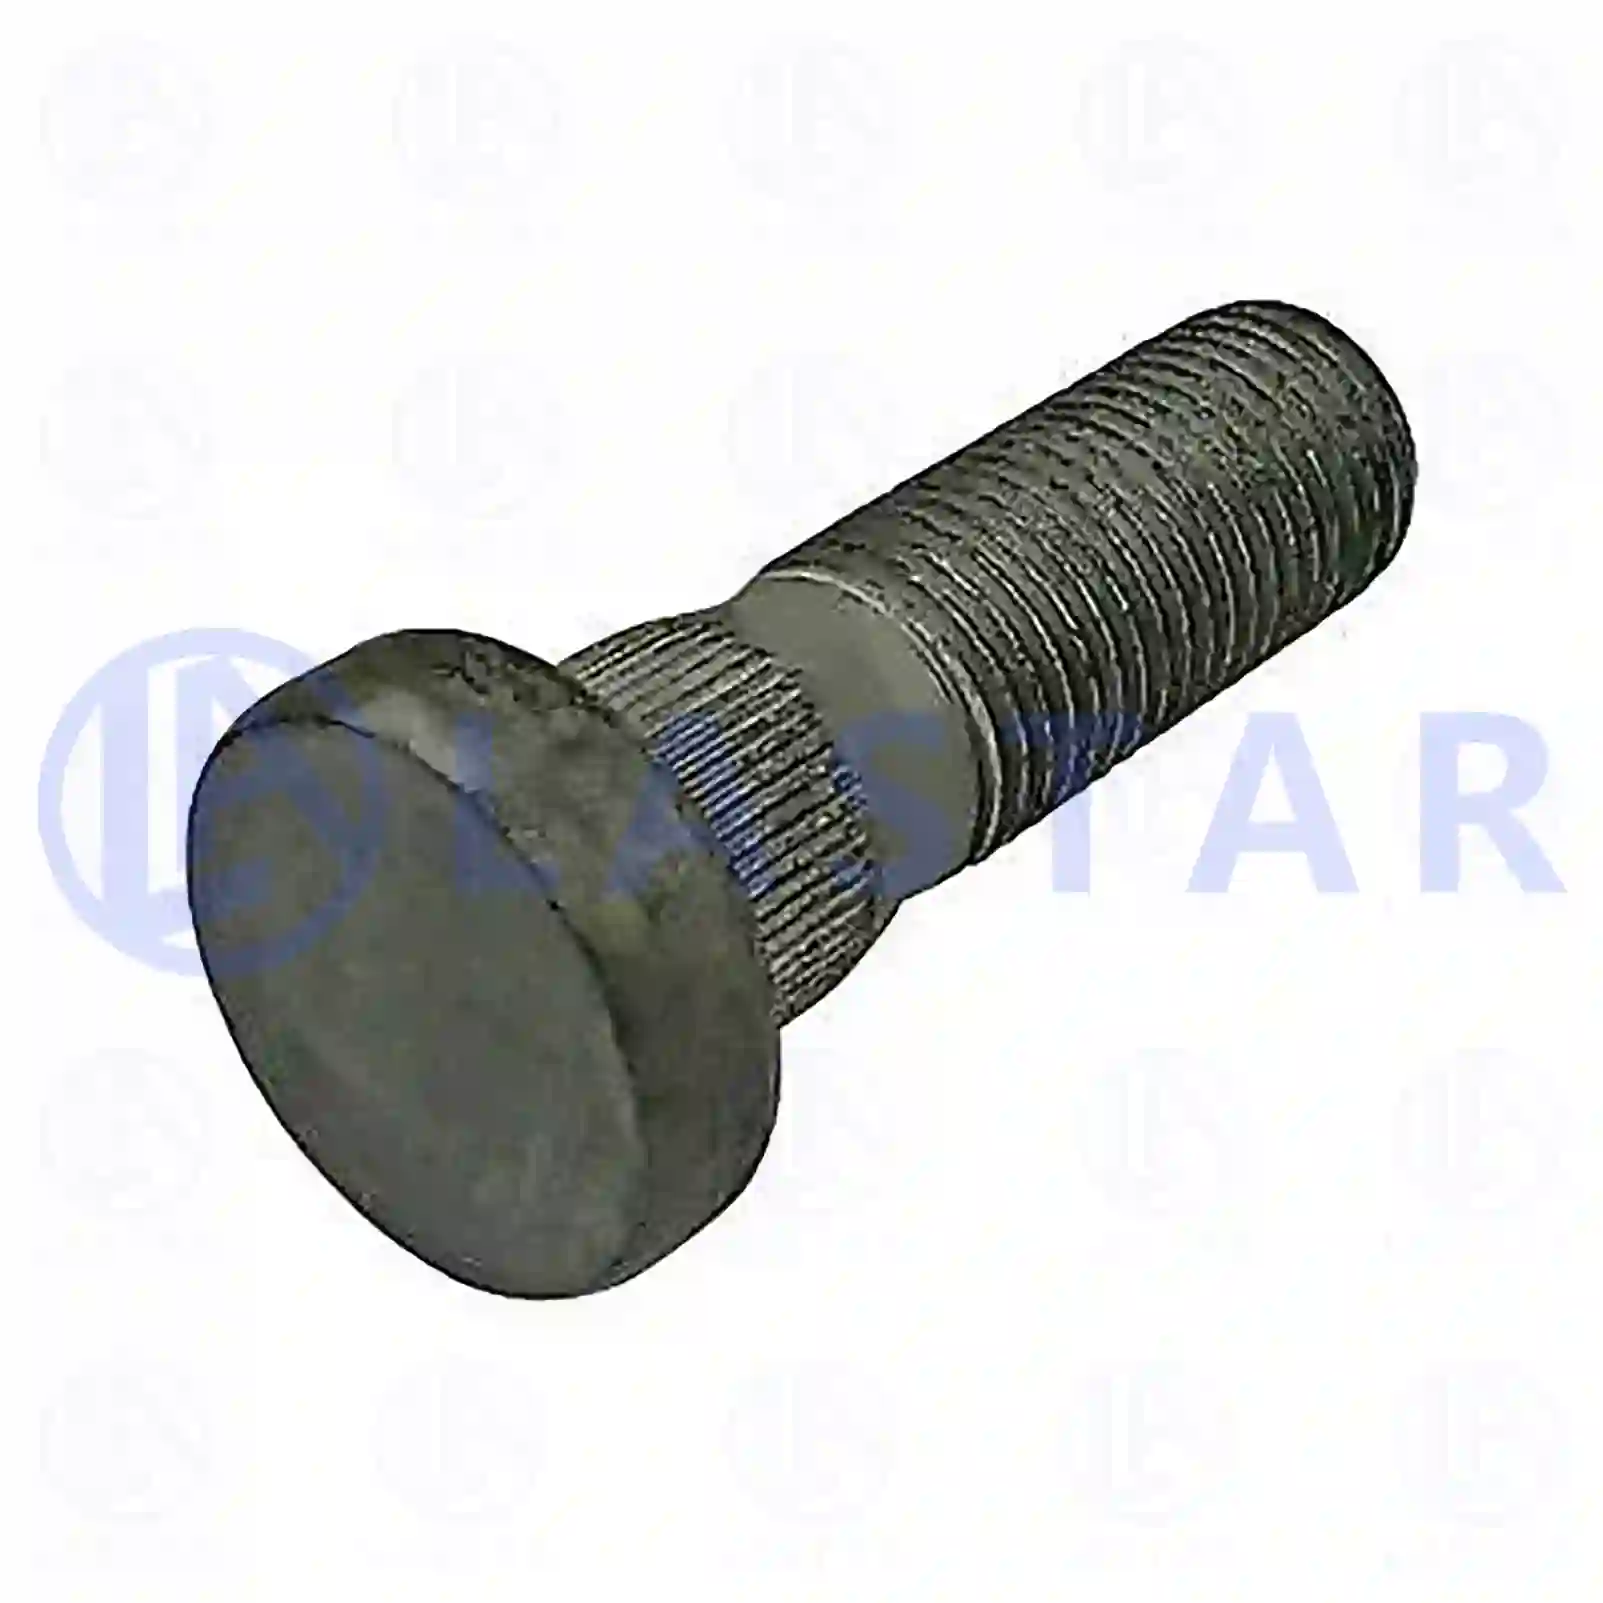  Wheel bolt || Lastar Spare Part | Truck Spare Parts, Auotomotive Spare Parts